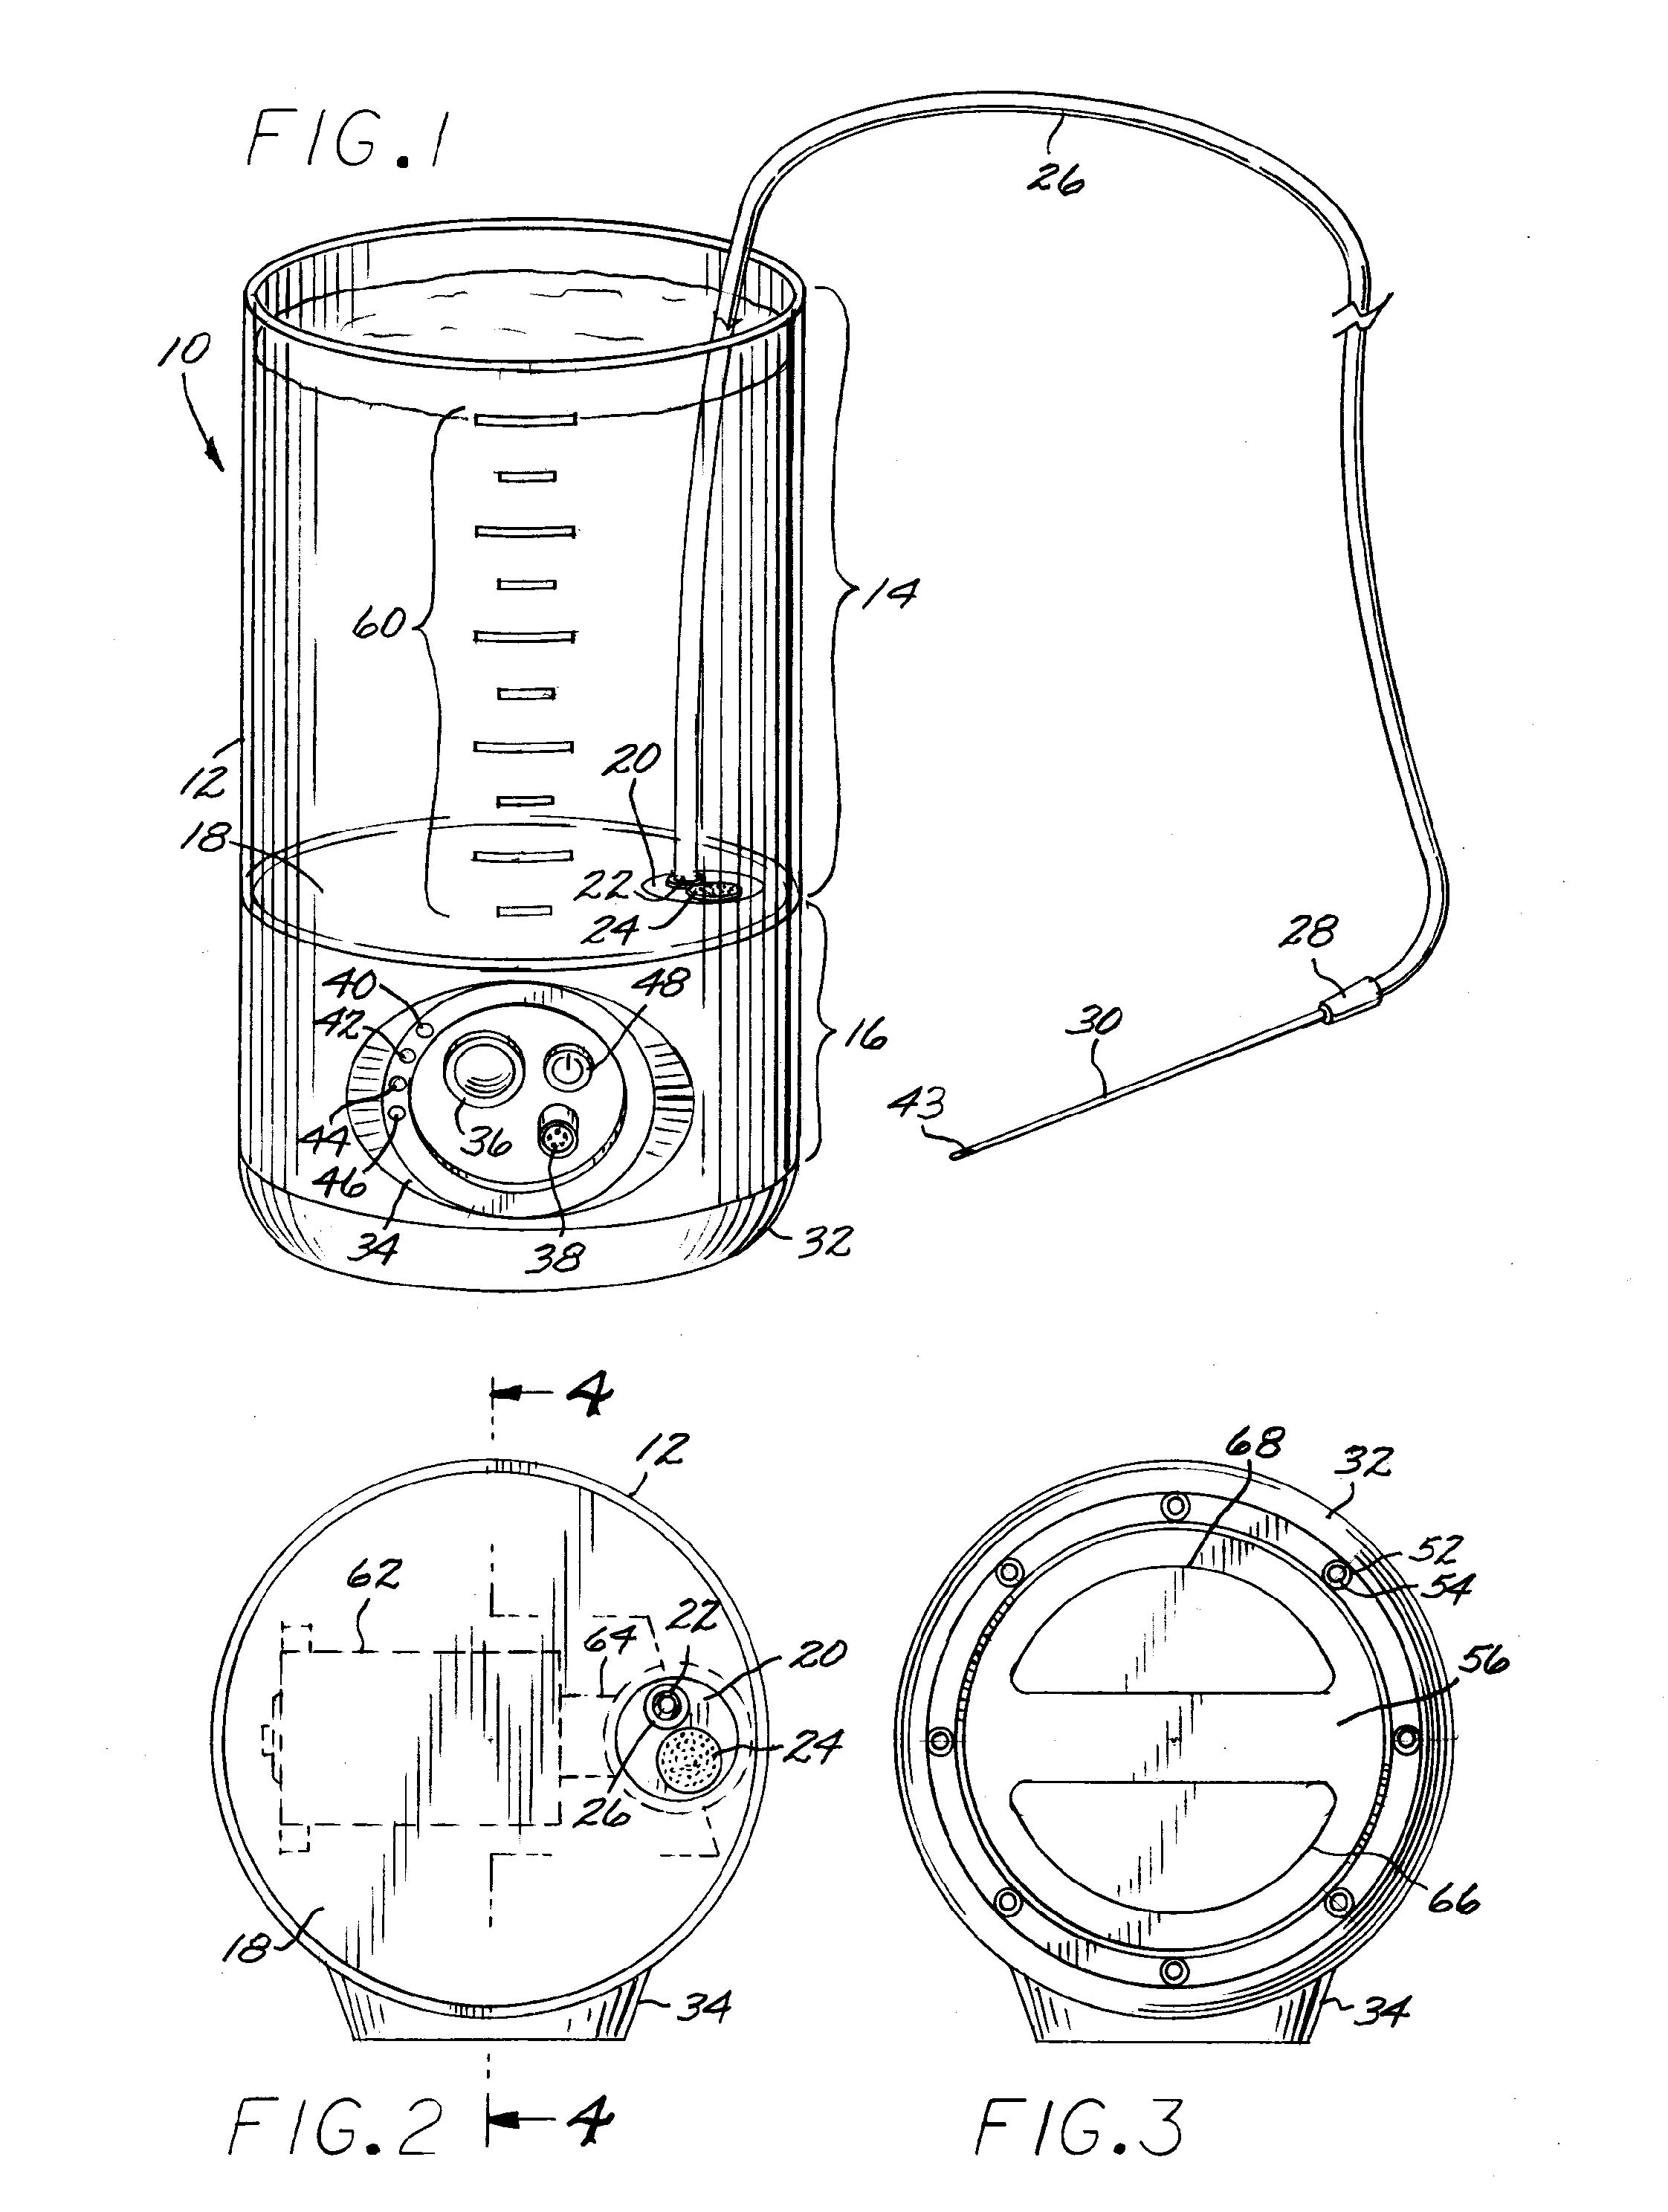 Antegrade colonic instillation apparatus